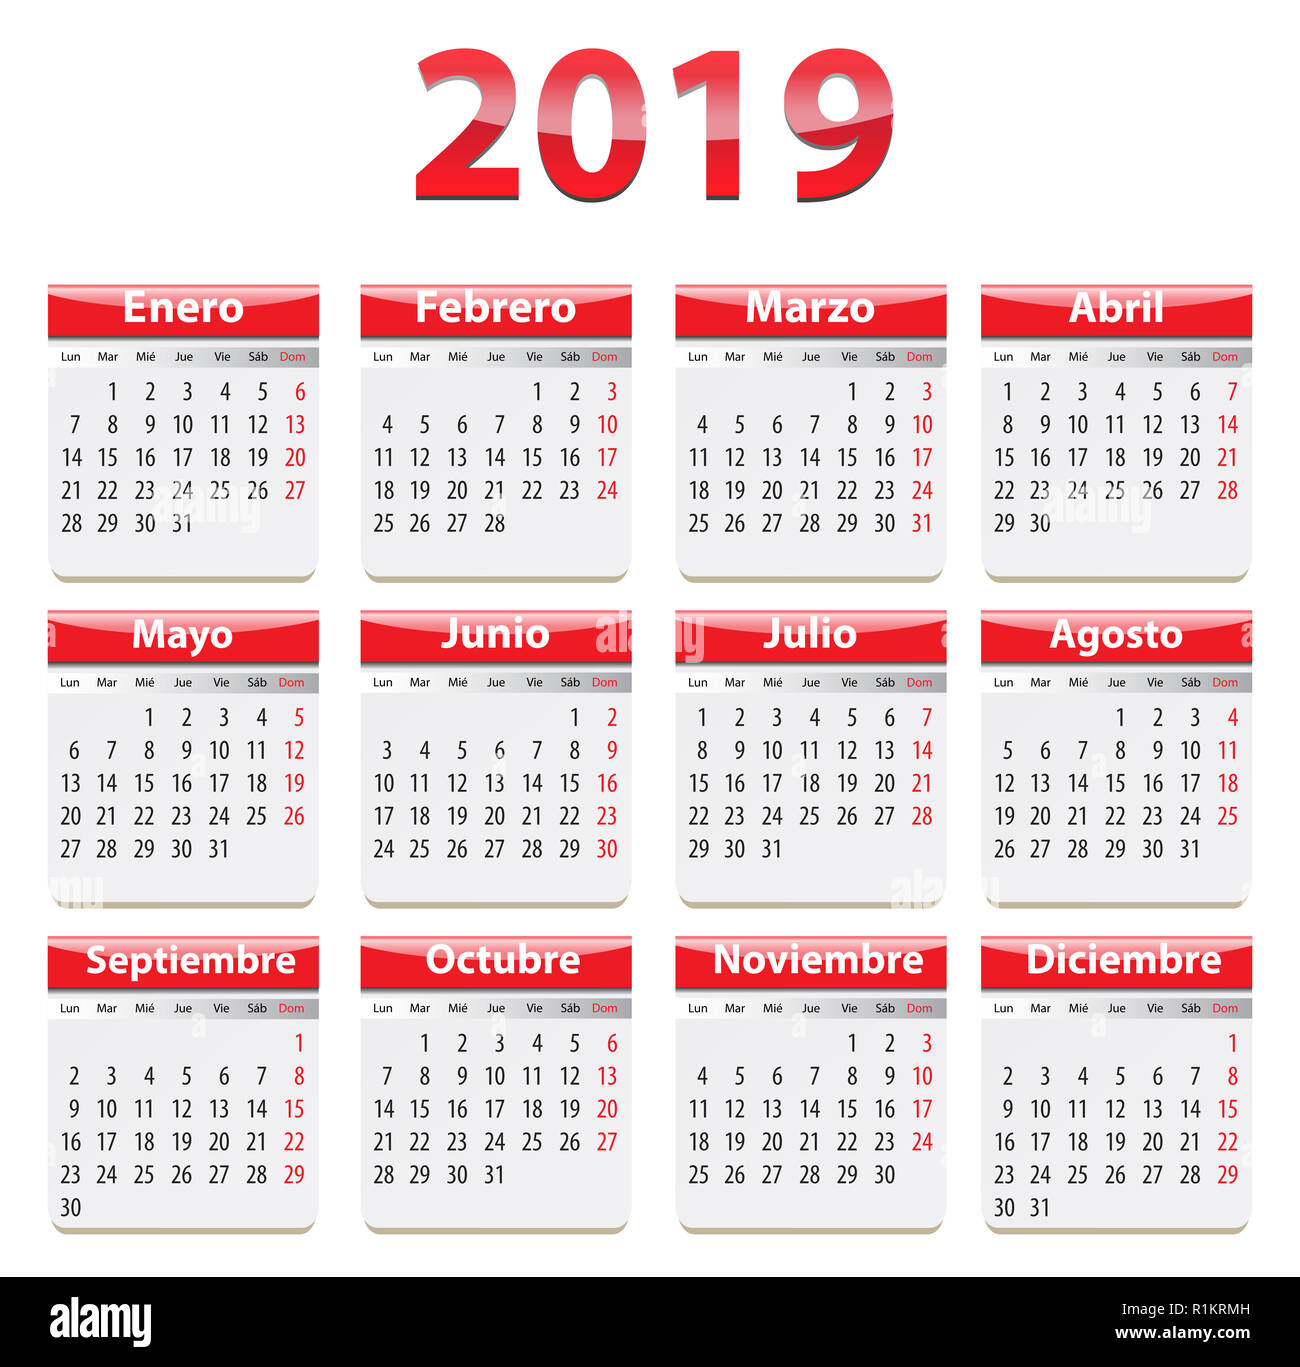 Calendario 2019 Immagini senza sfondo e Foto Stock ritagliate - Alamy